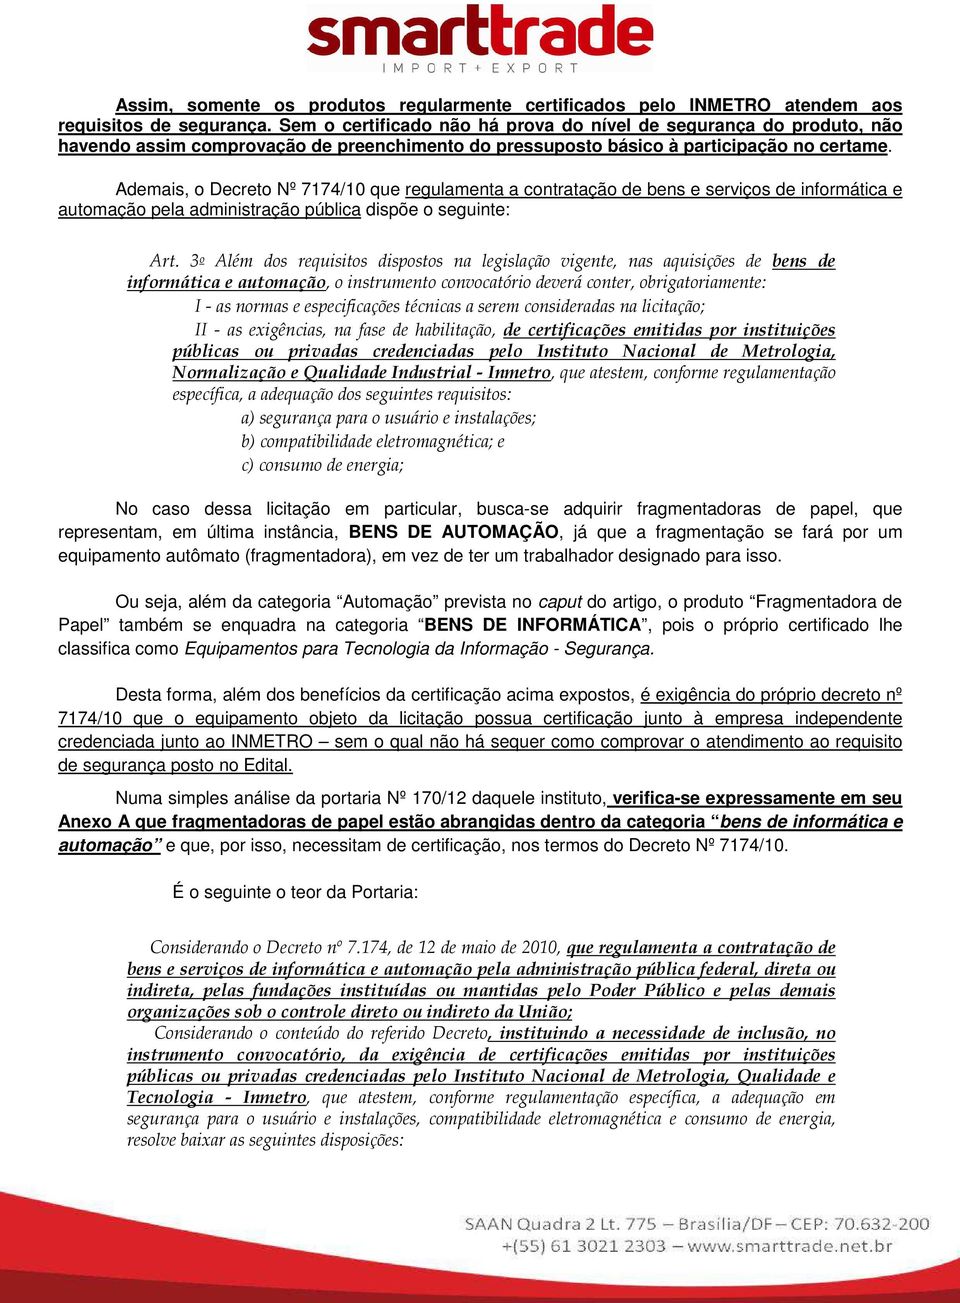 Ademais, o Decreto Nº 7174/10 que regulamenta a contratação de bens e serviços de informática e automação pela administração pública dispõe o seguinte: Art.